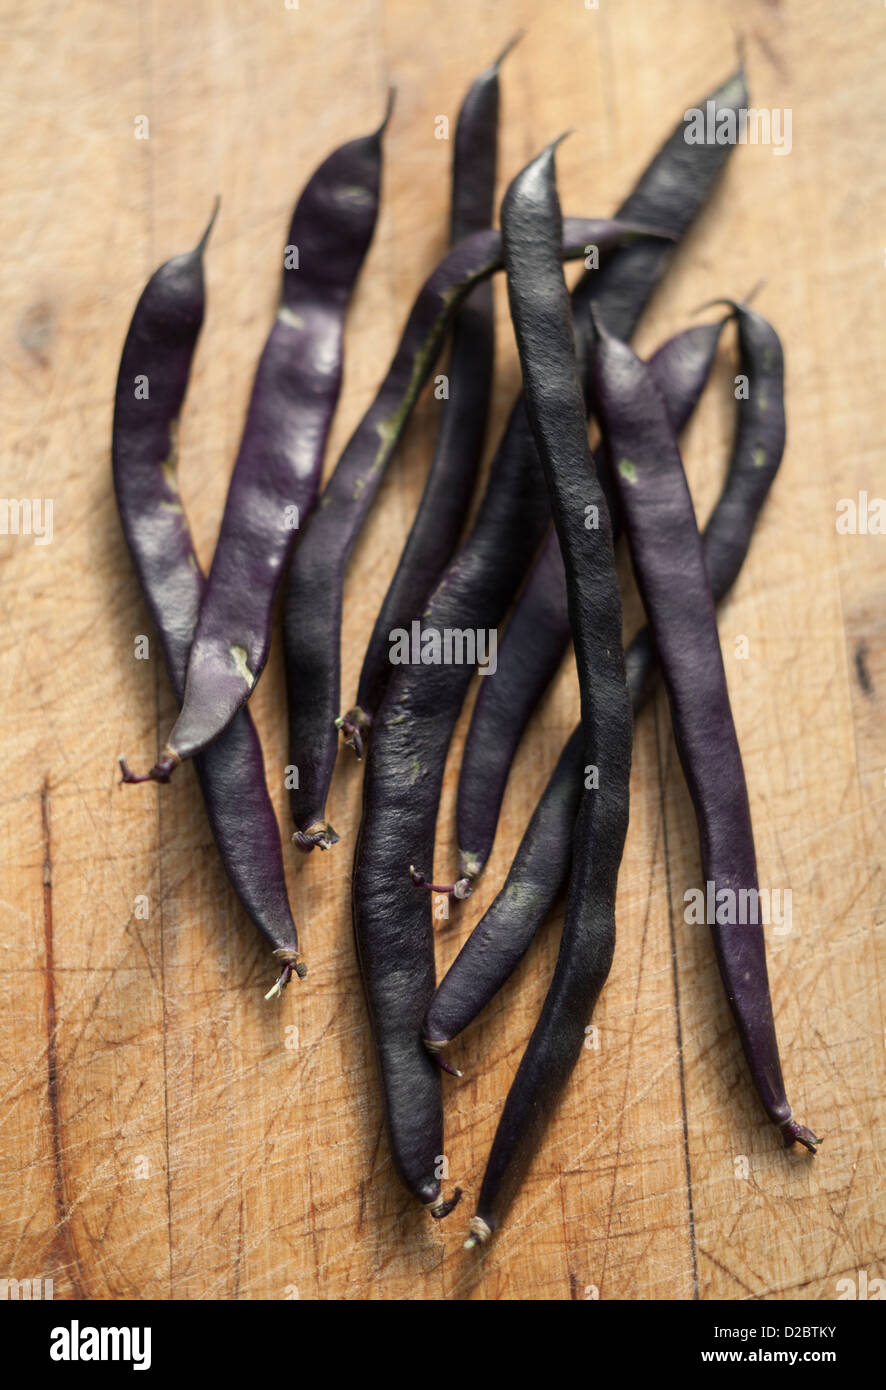 Organici di colore nero della vigna freschi Fagioli runner su un tagliere Foto Stock